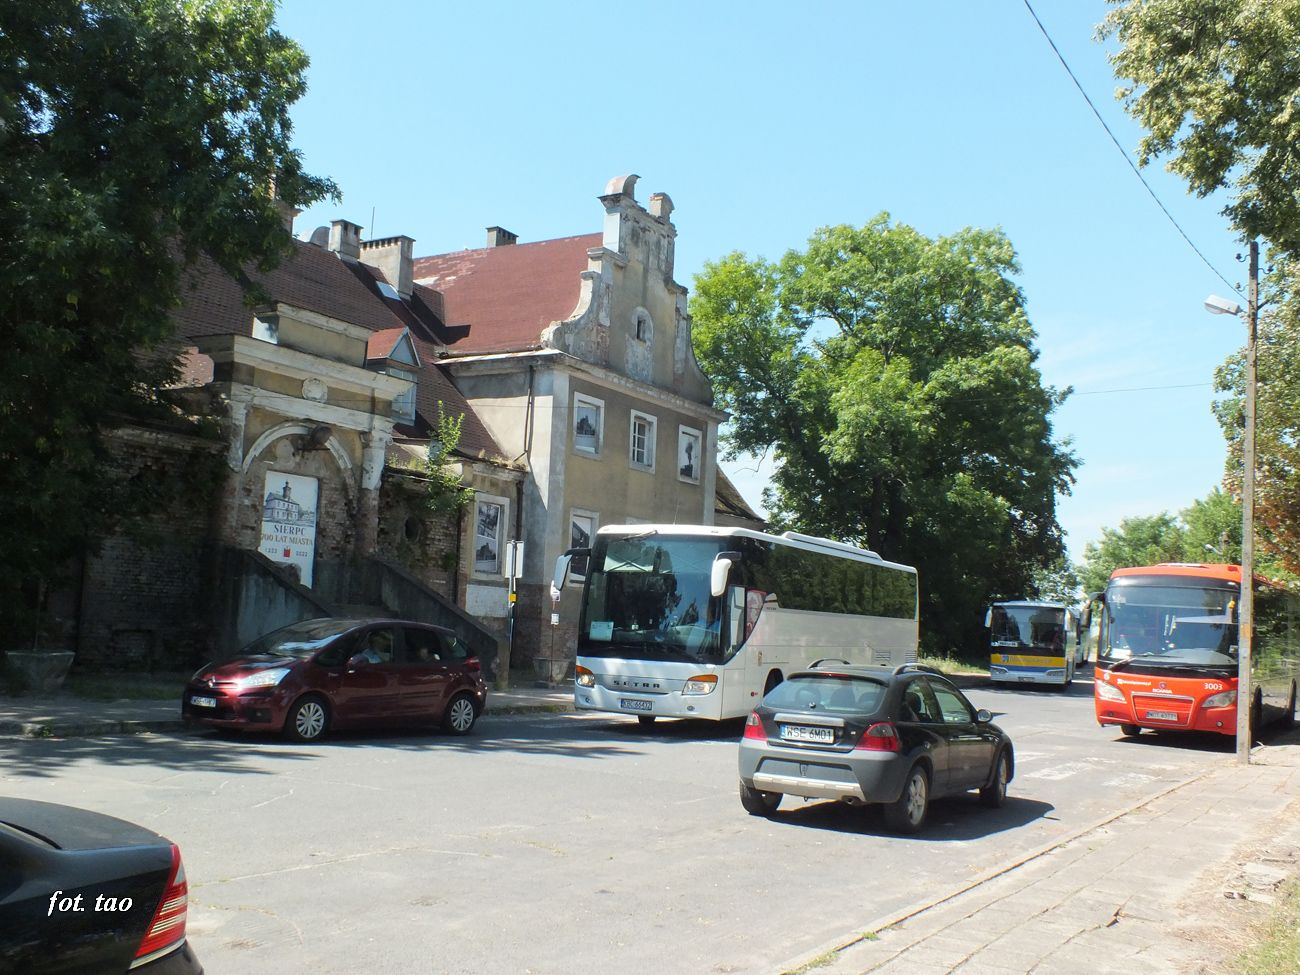 Od strony miasta przed dworcem czekają autobusy jako komunikacja zastępcza do Płocka, sierpień 2022 r.